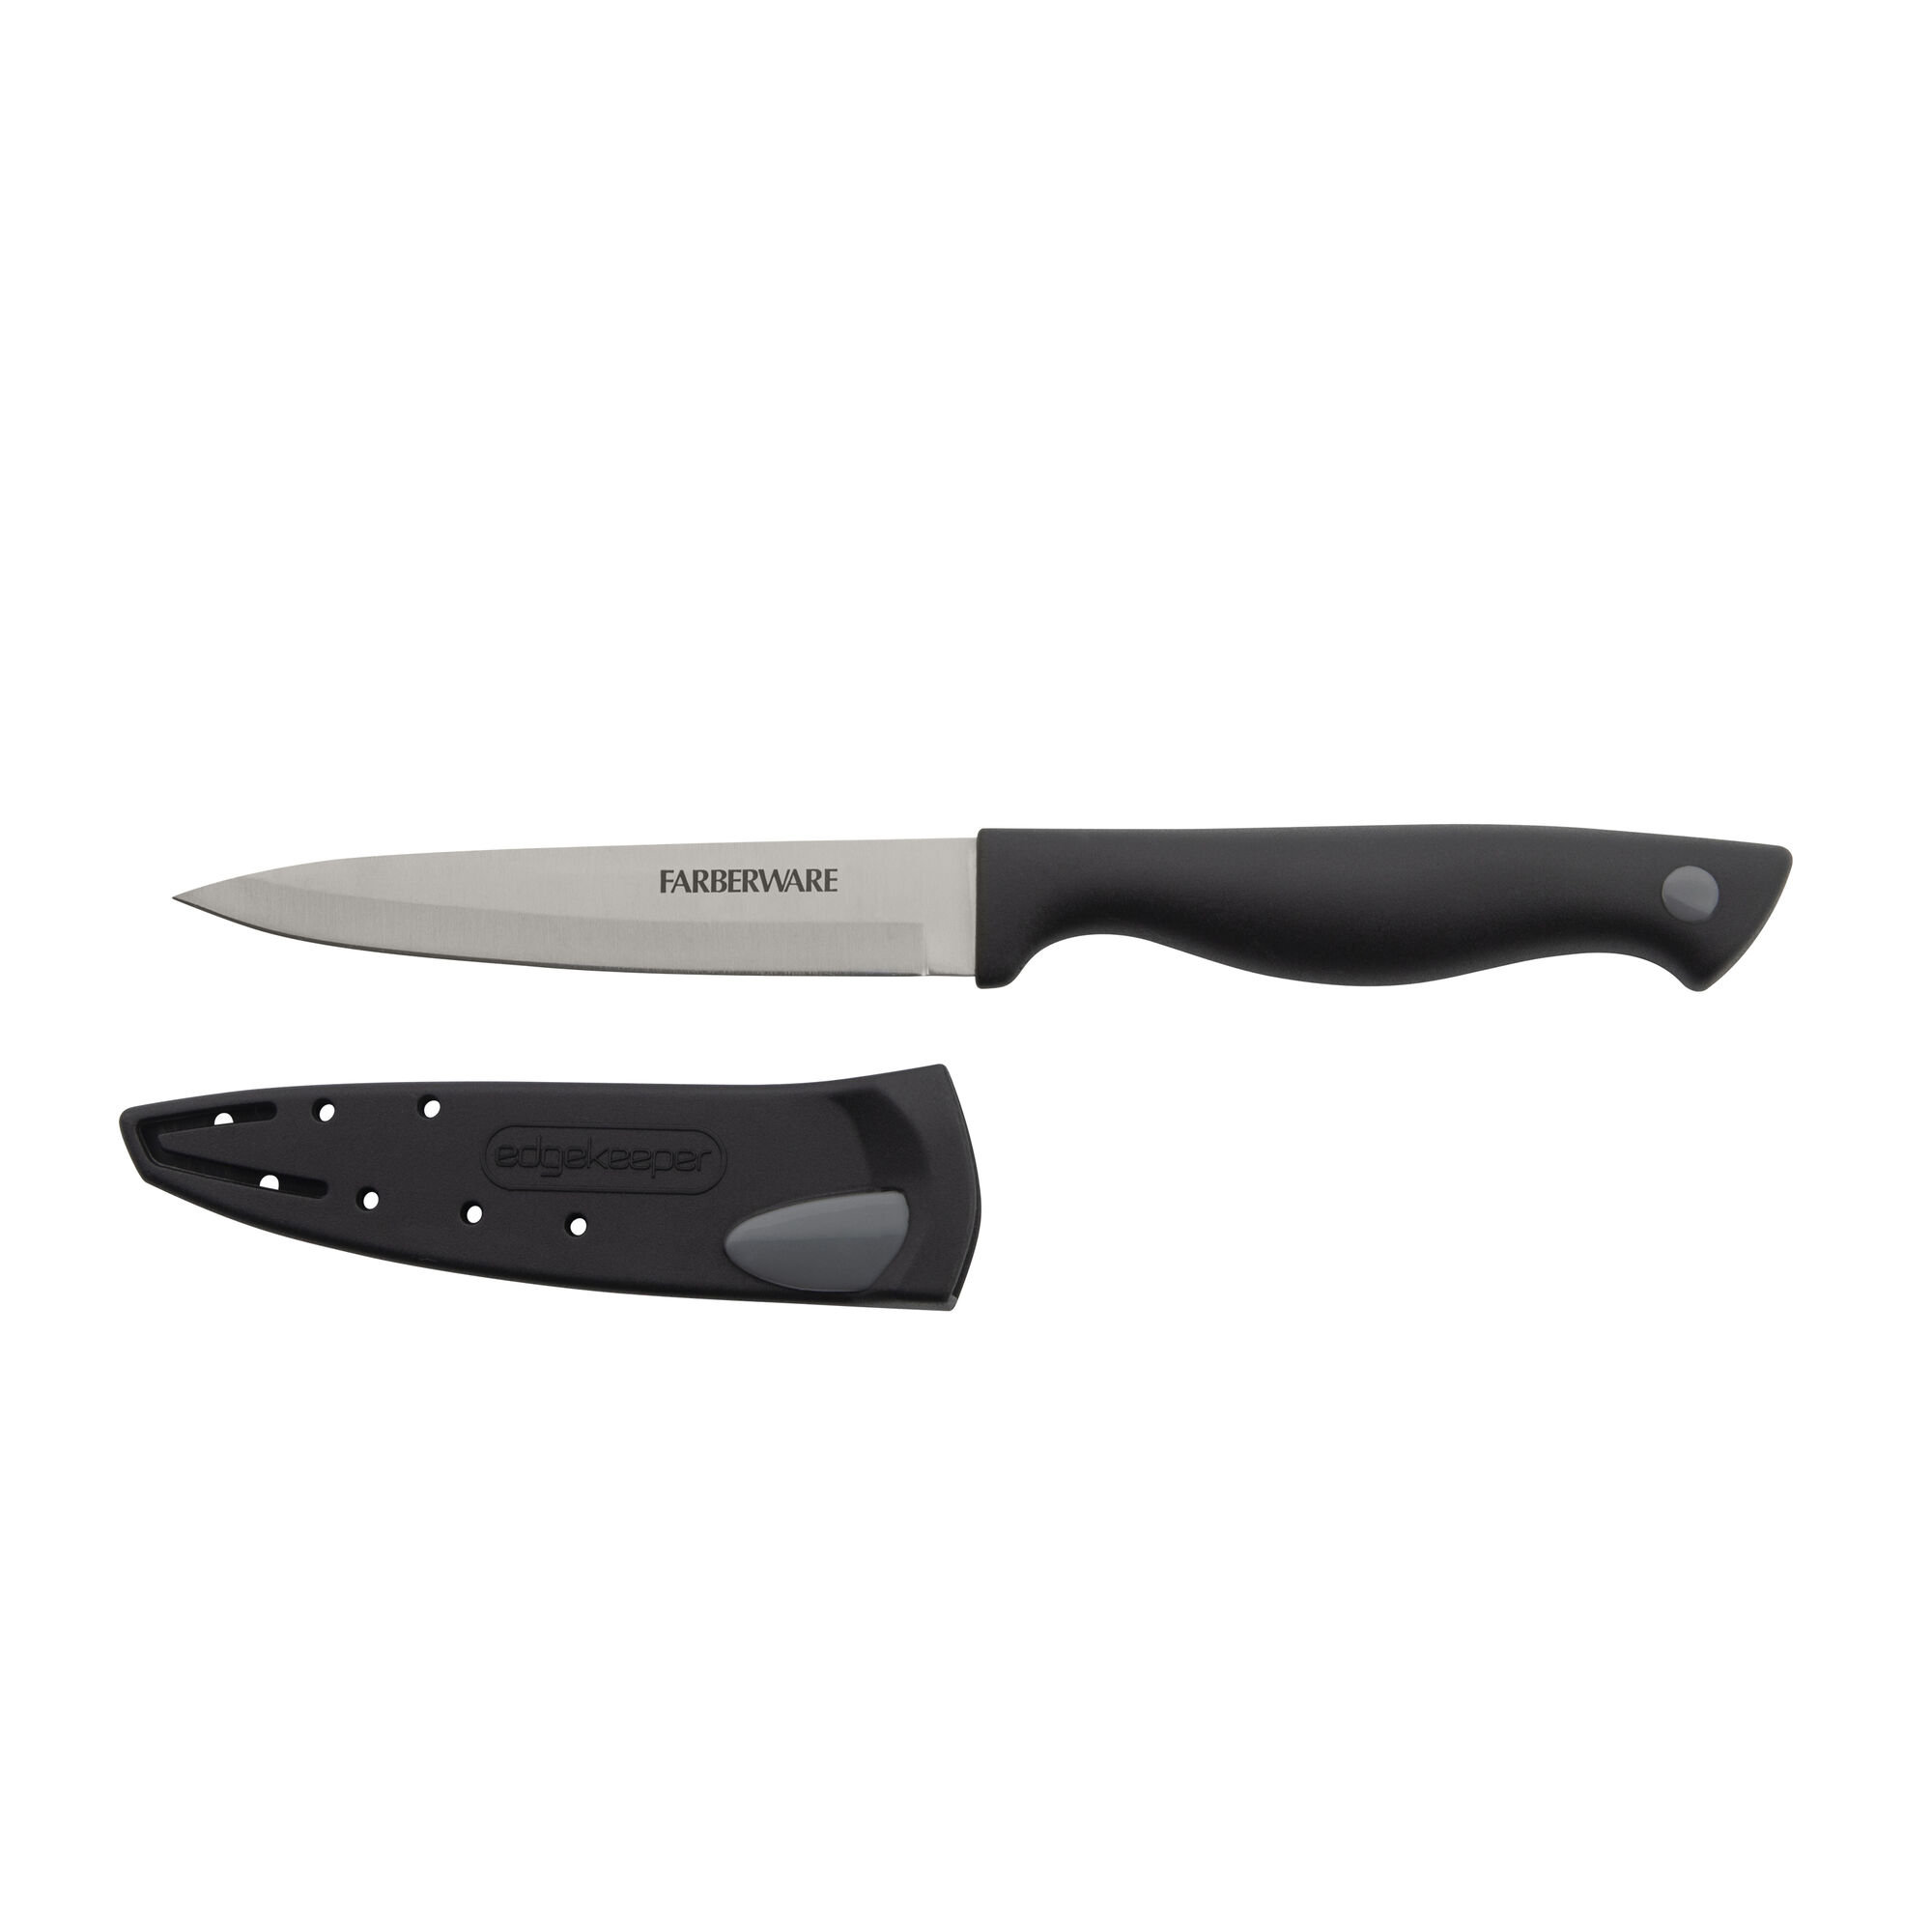 Farberware Edgekeeper 8 Chef Knife with Sleeve (Black)